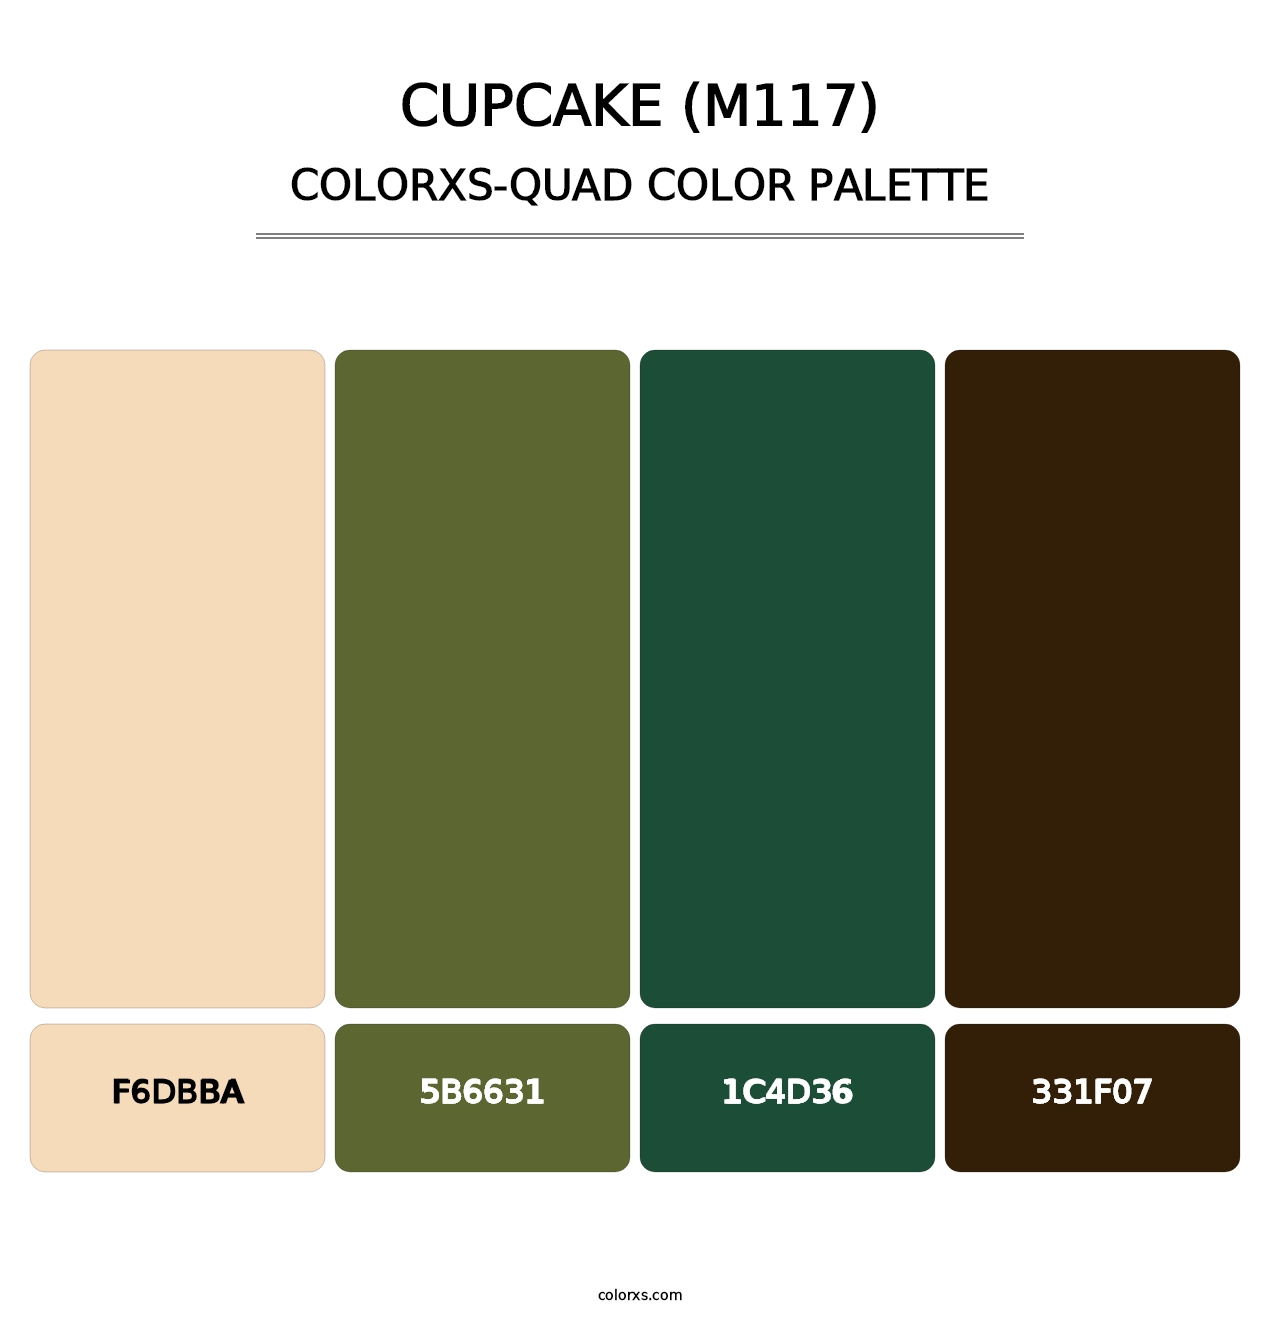 Cupcake (M117) - Colorxs Quad Palette